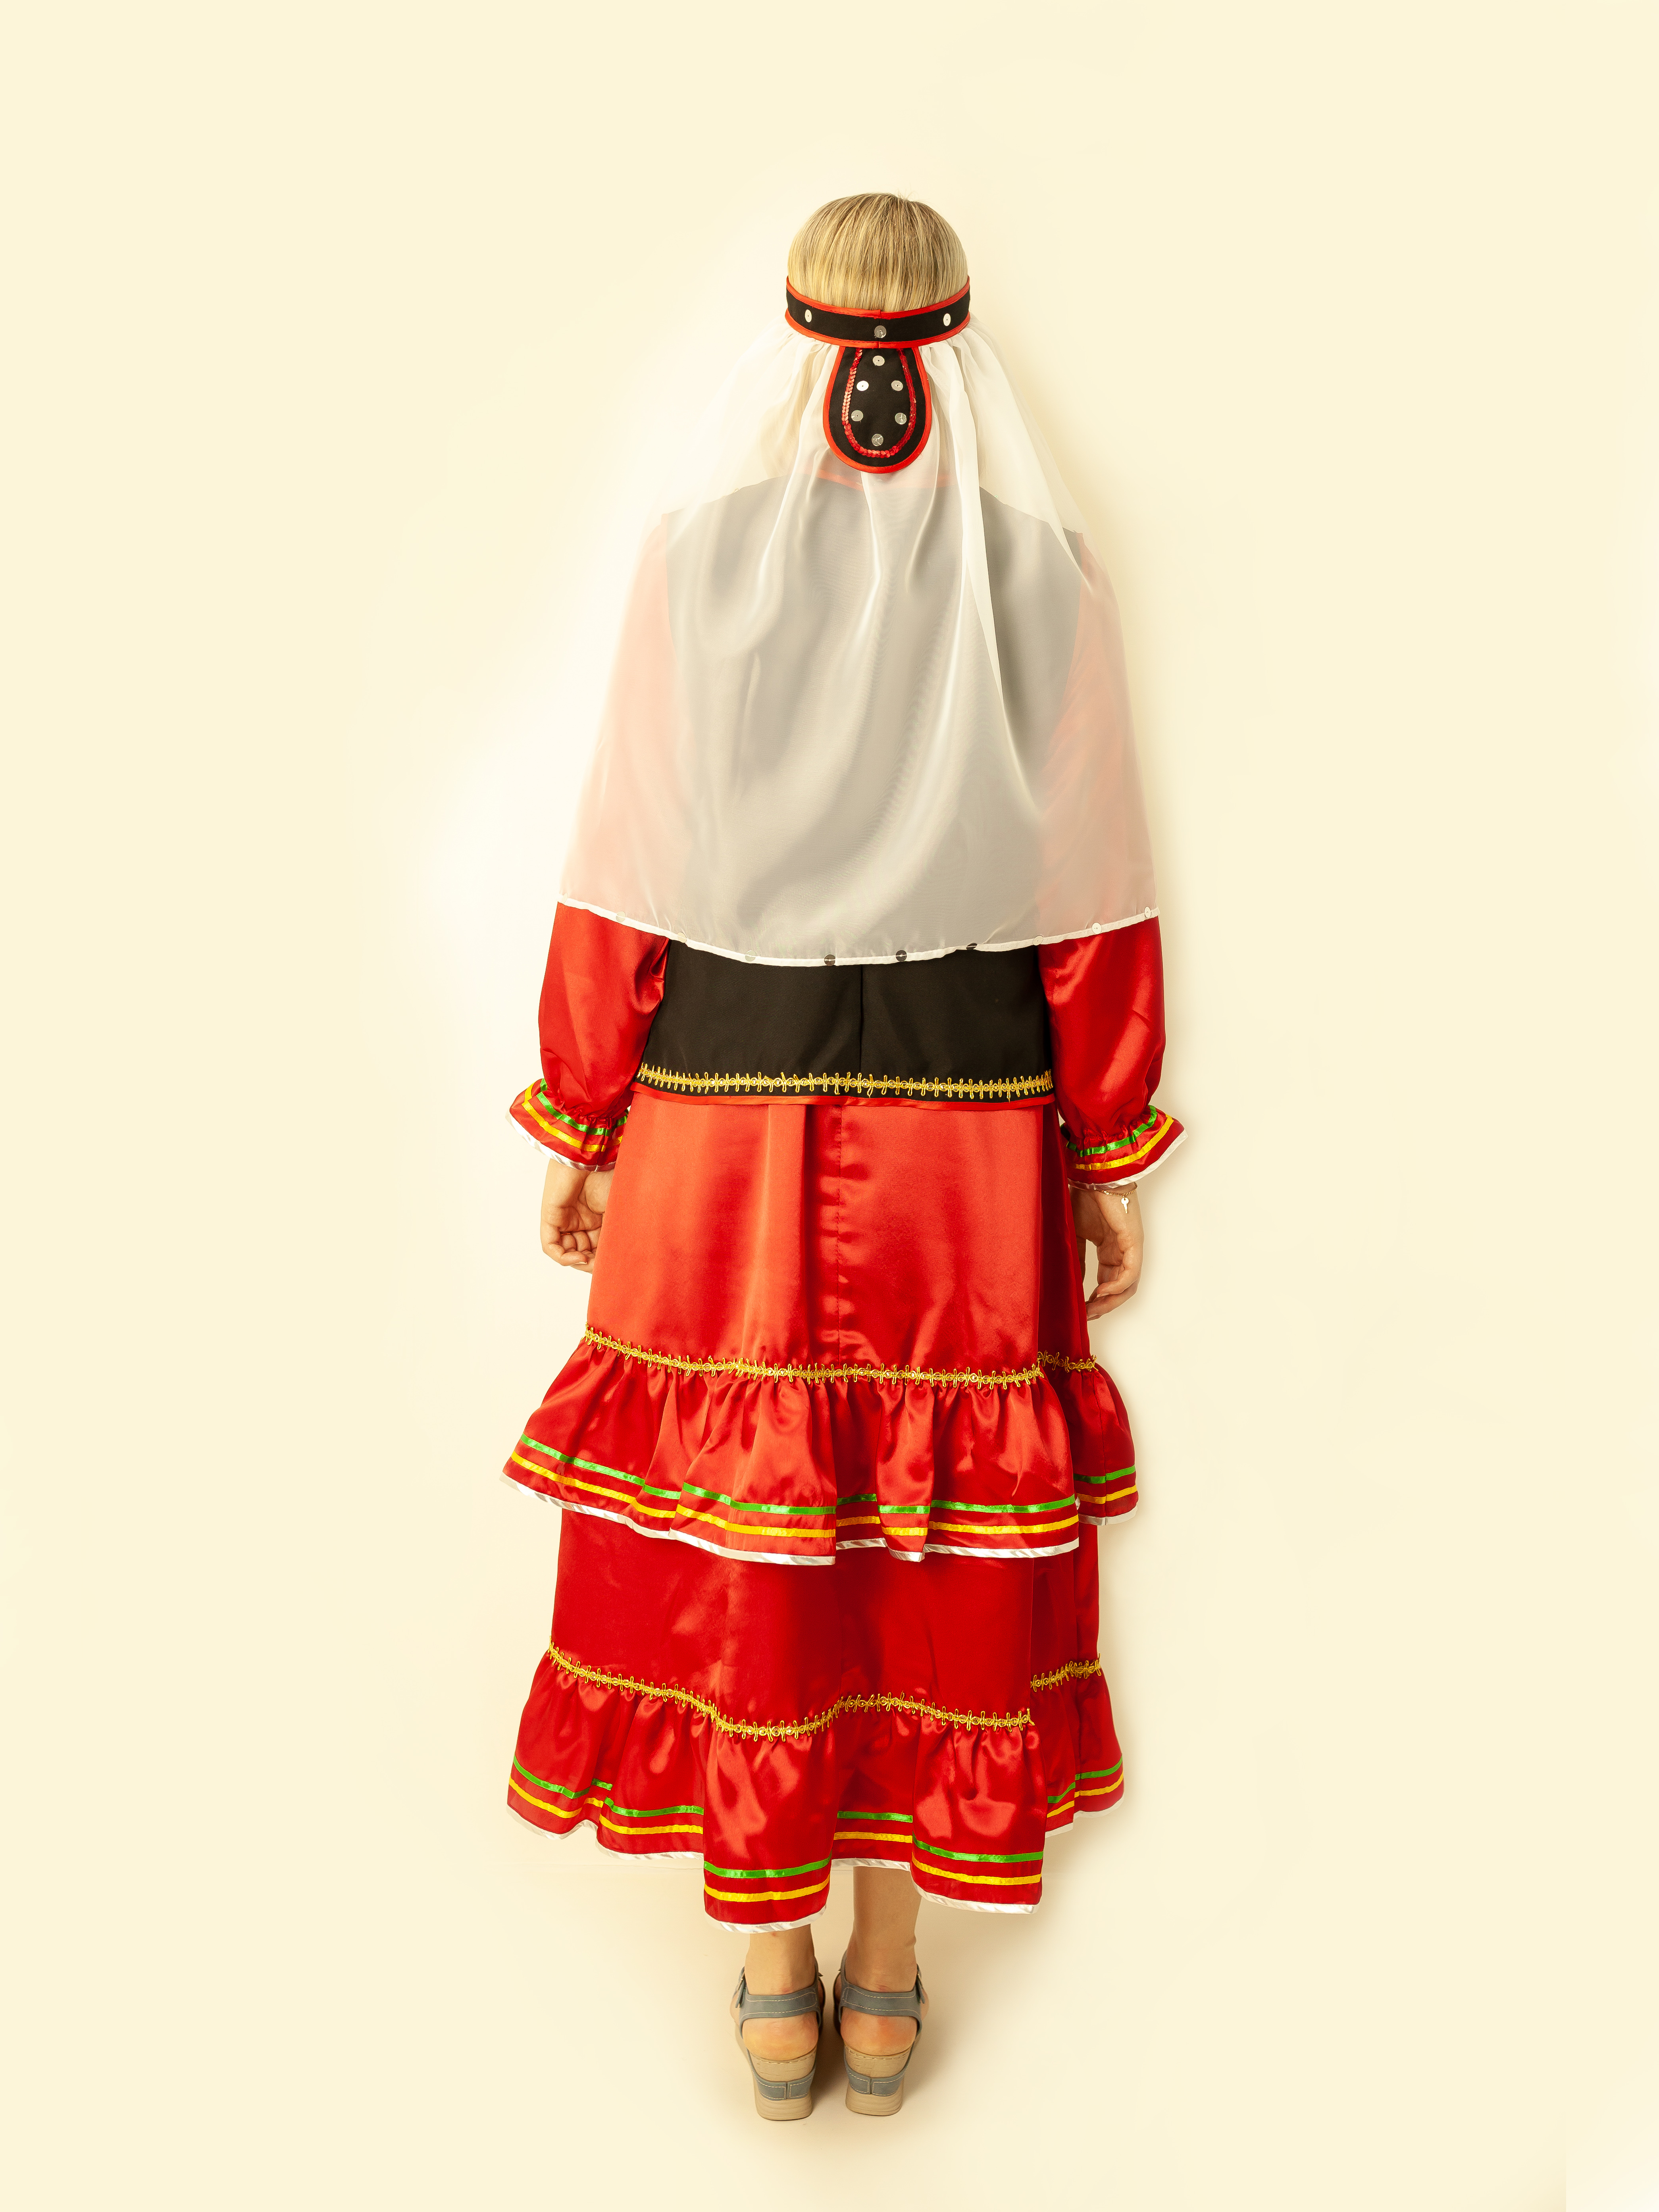 Башкирский народный костюм (женский)